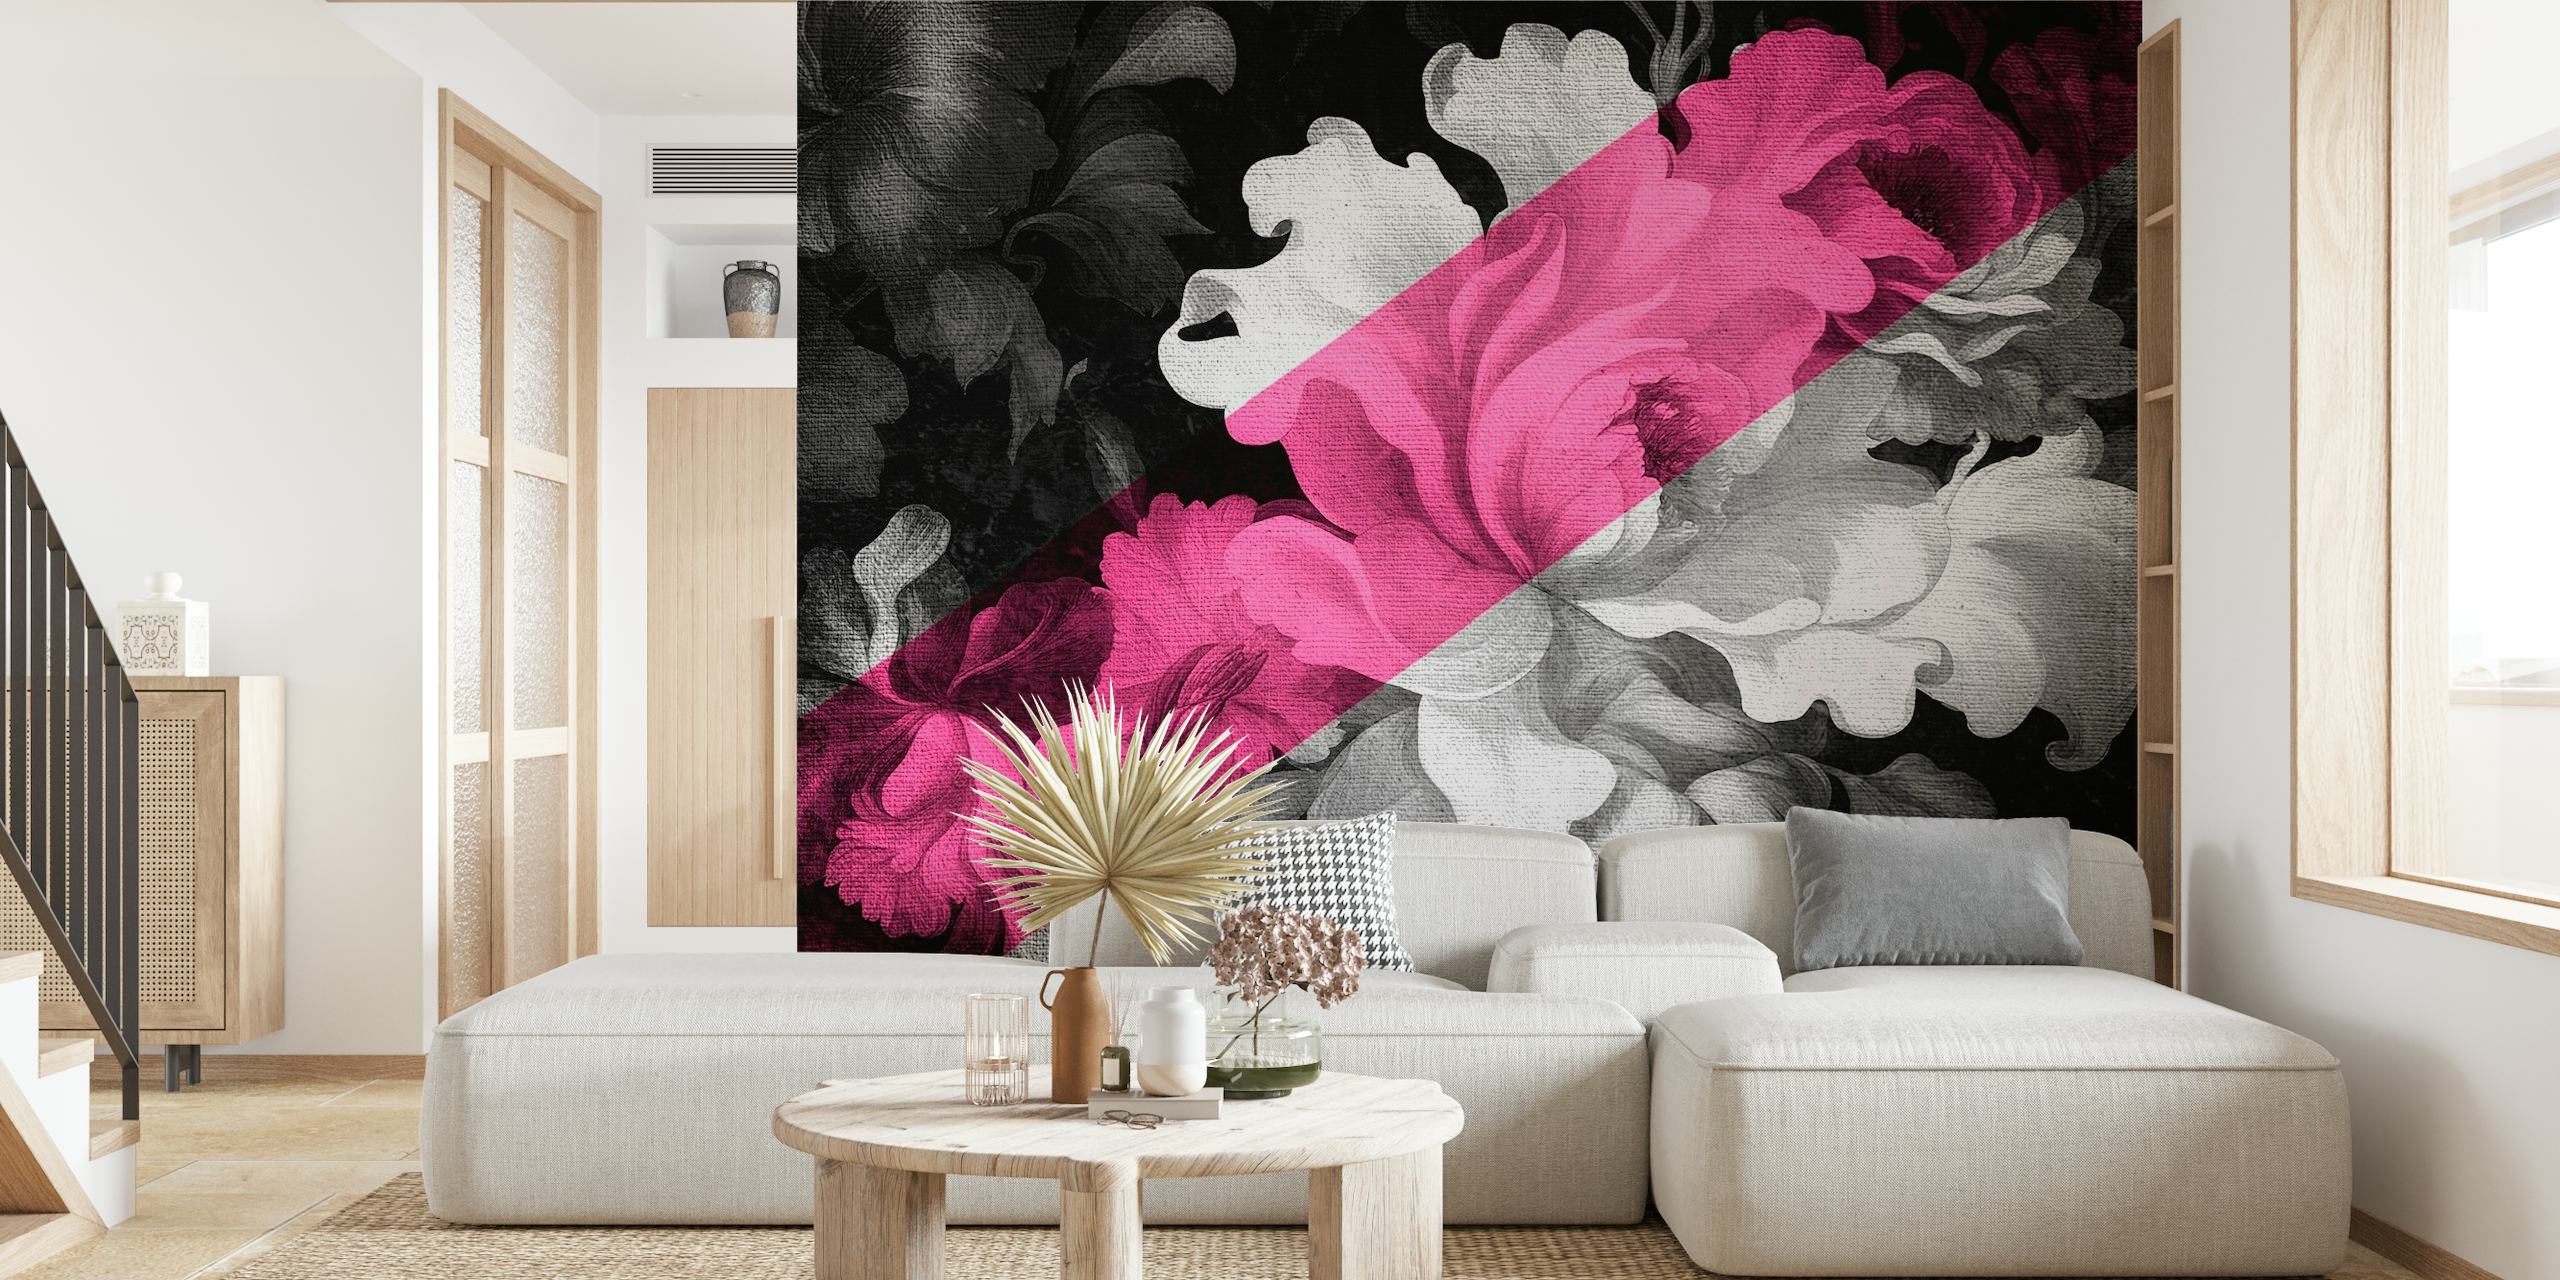 Mural floral monocromo y rosa que combina estilos renacentista y pop art moderno